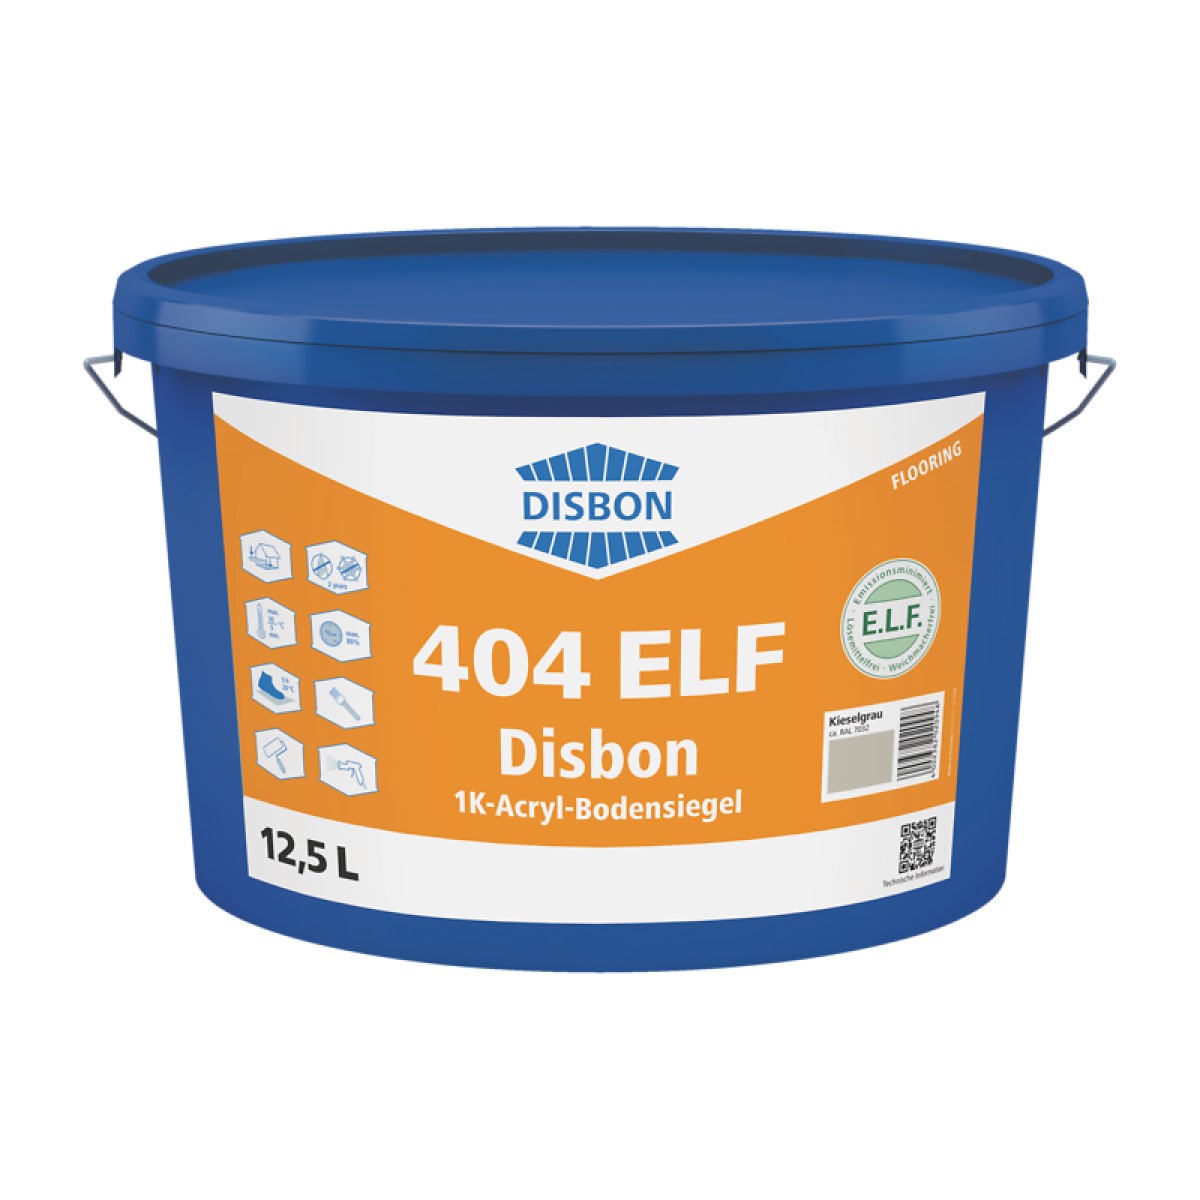 Disbon 404 ELF 1K-Acryl-Bodensiegel Zīdaini matēts aizsargklājums minerālām grīdu virsmām B1 2.5L